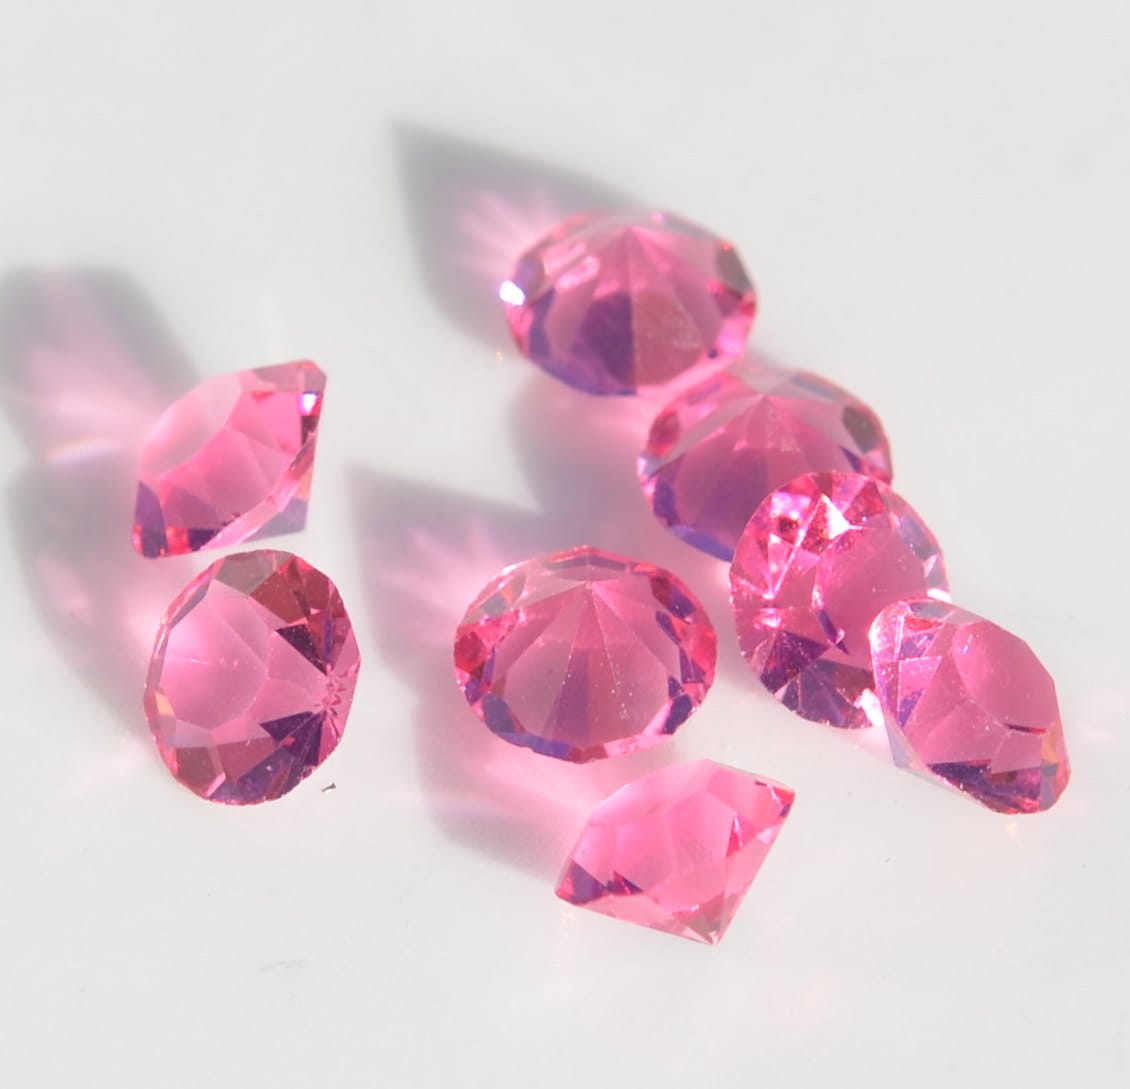 1 Memory Locket Sparkling Pink Crystals FL188 | Etsy